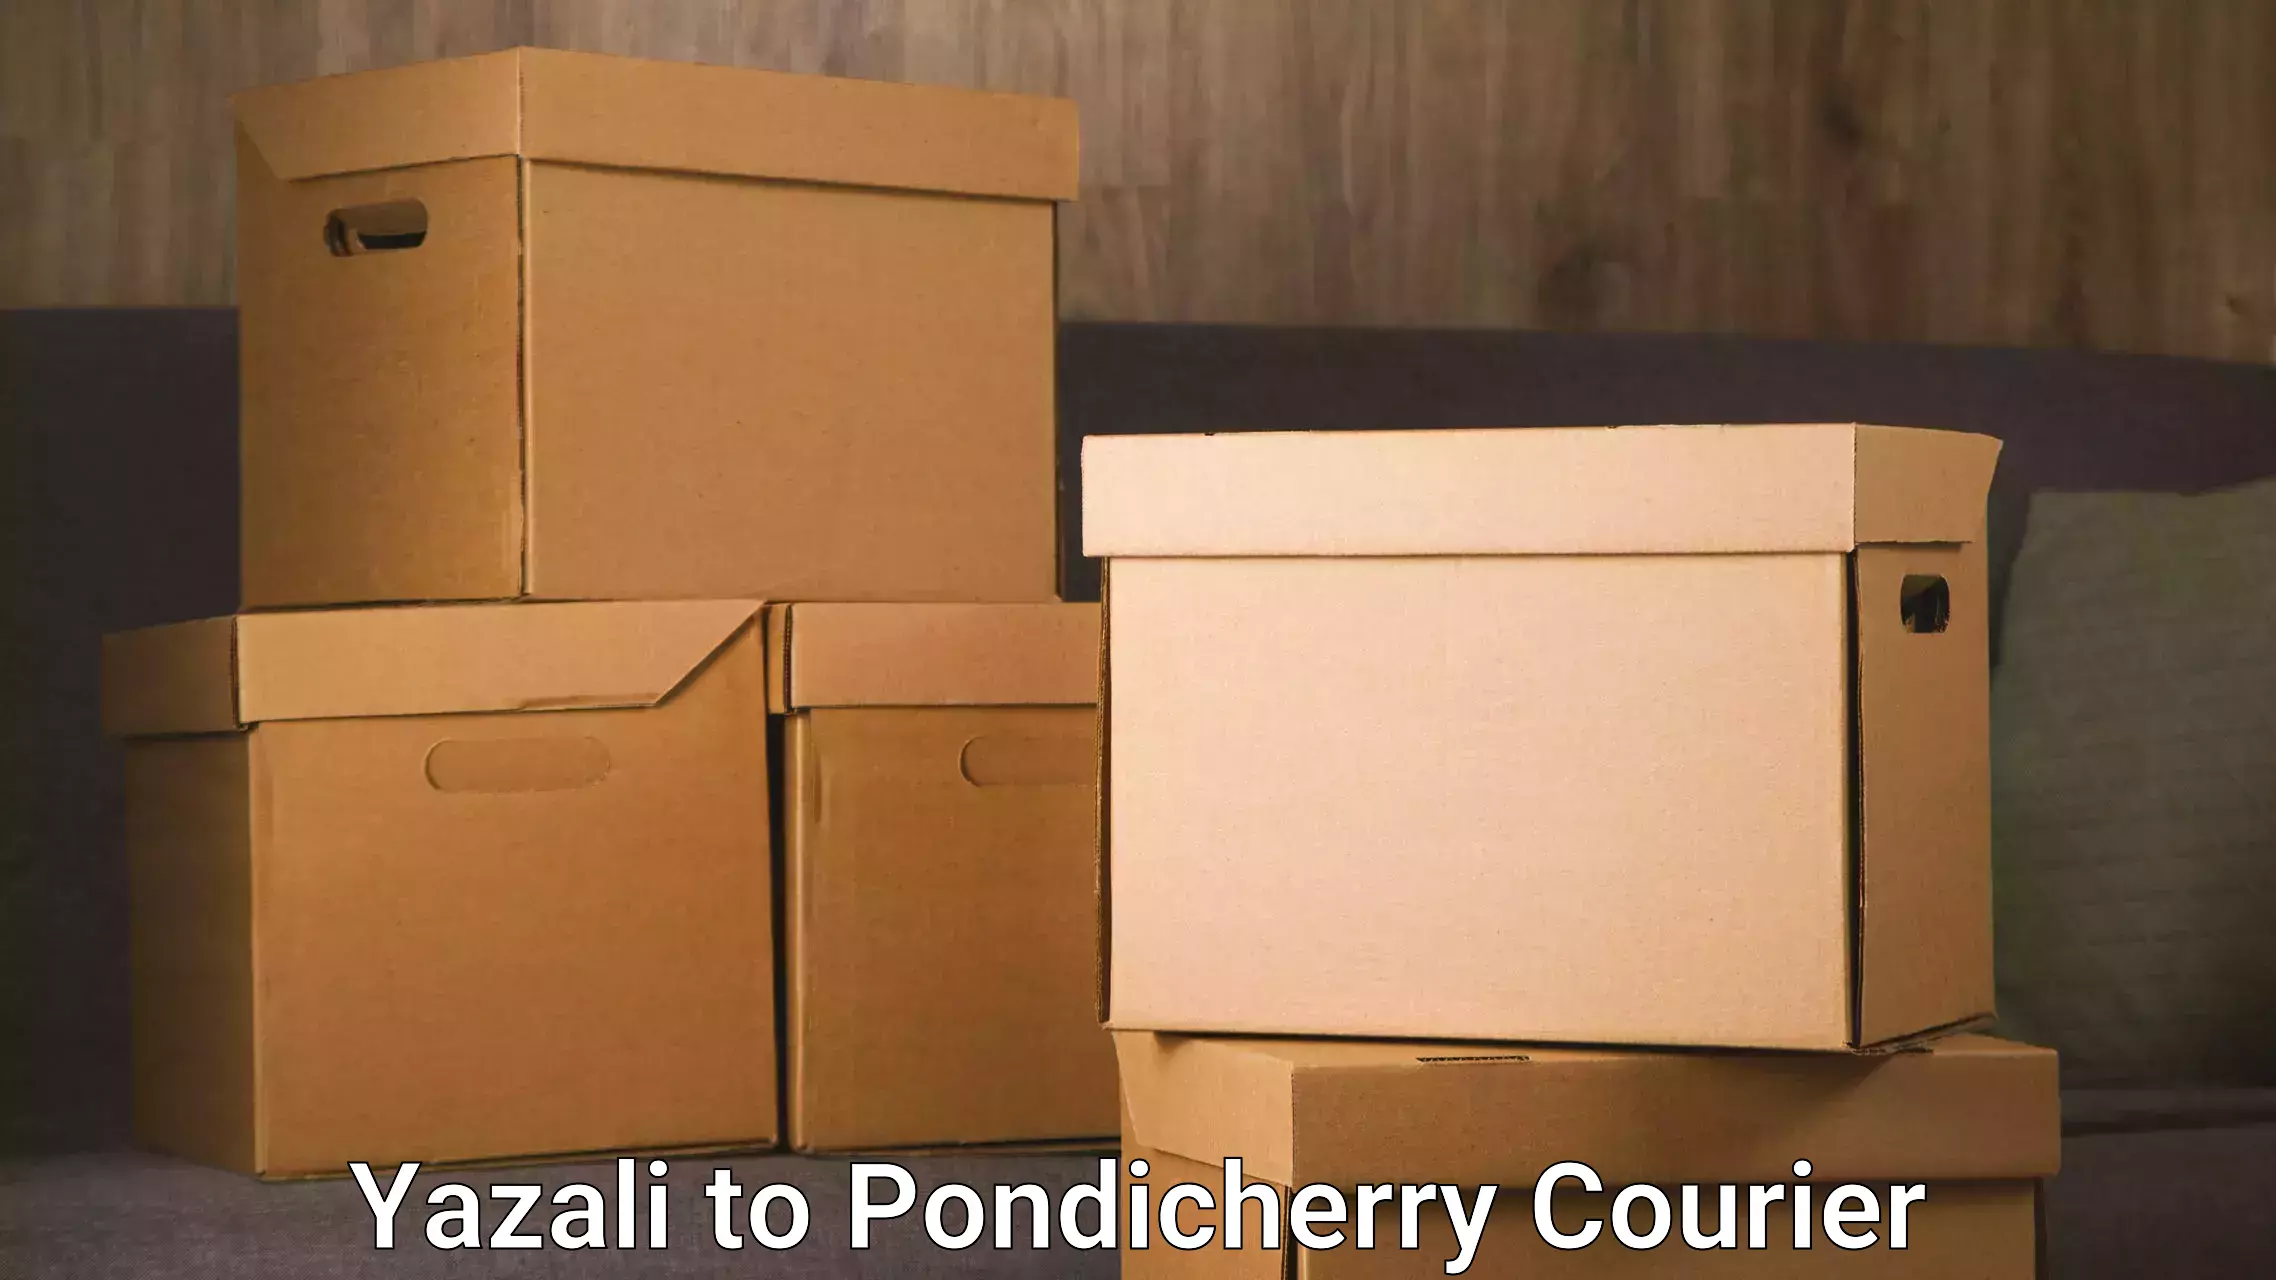 Courier service comparison in Yazali to Pondicherry